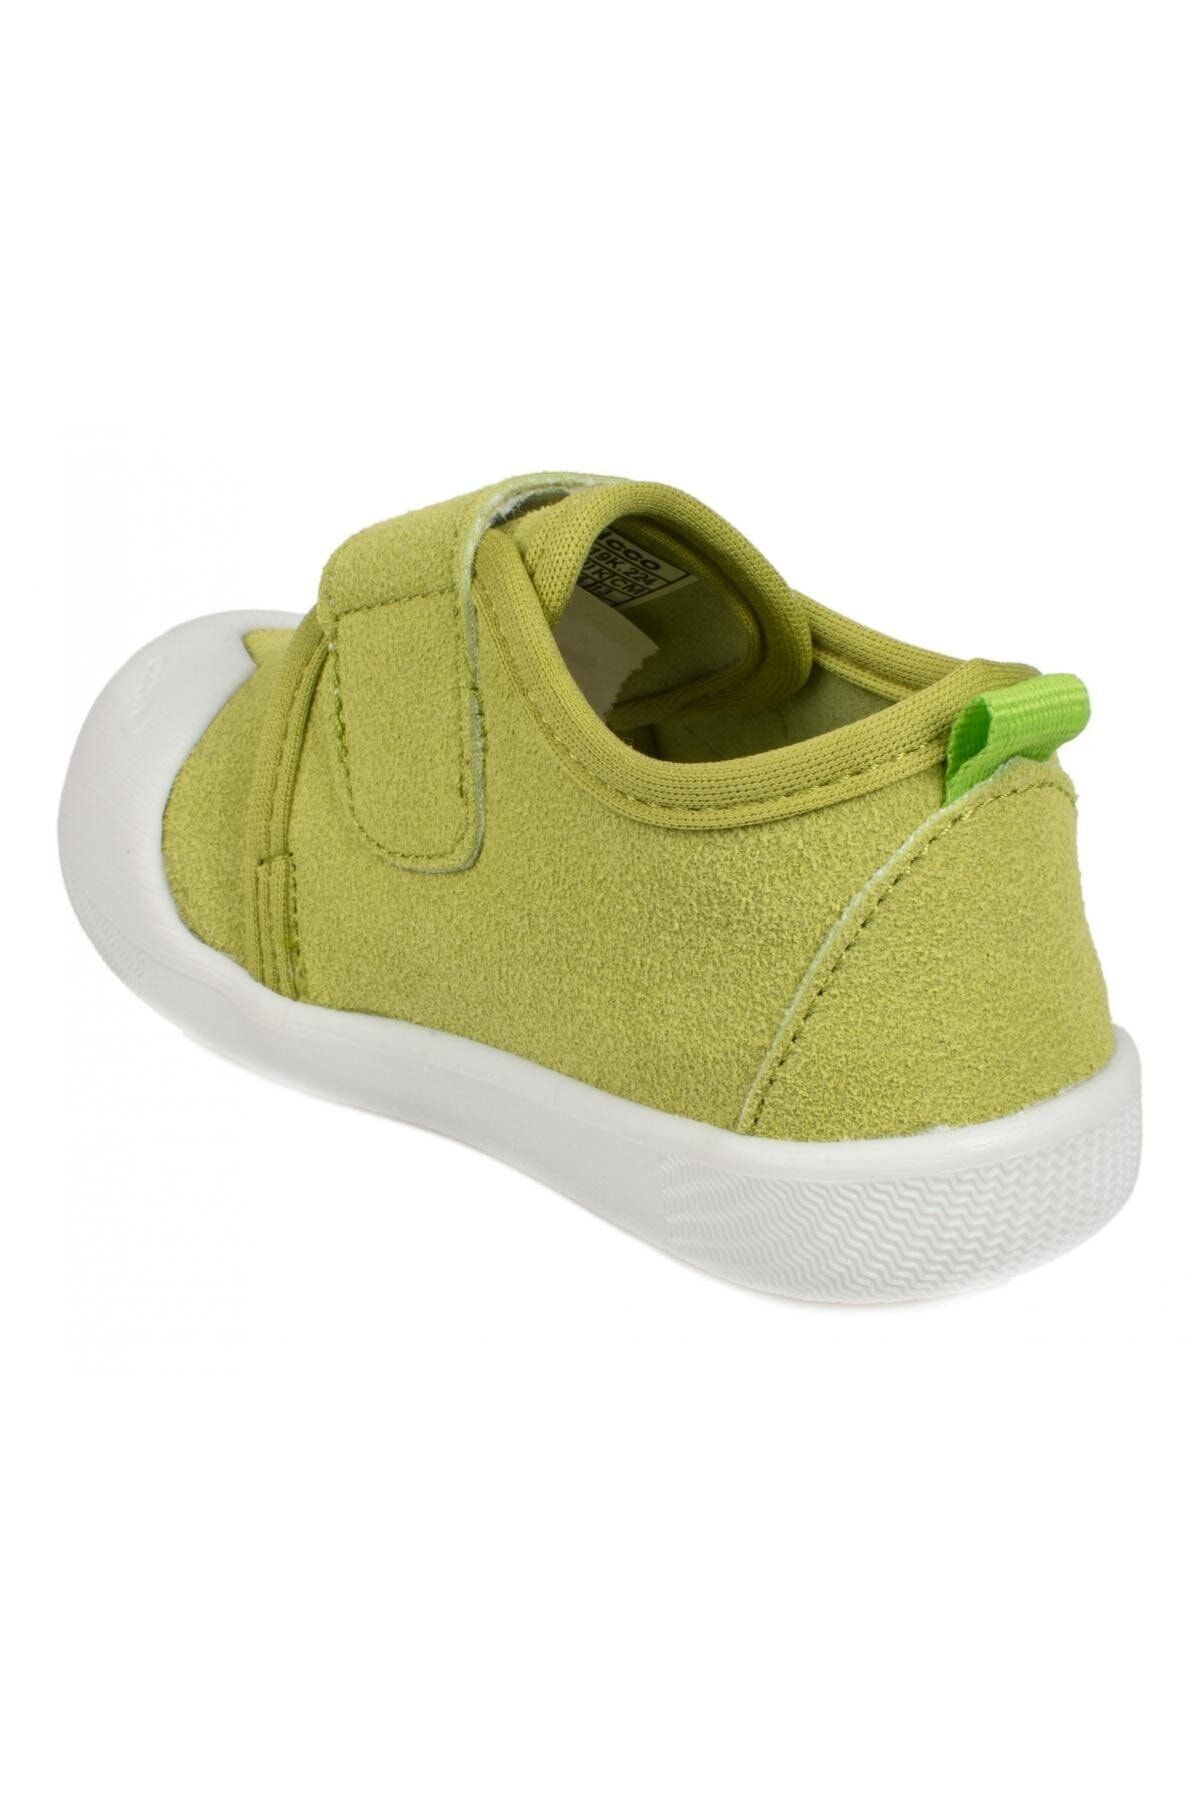 Vicco Yeşil - Bebek Spor Ayakkabı